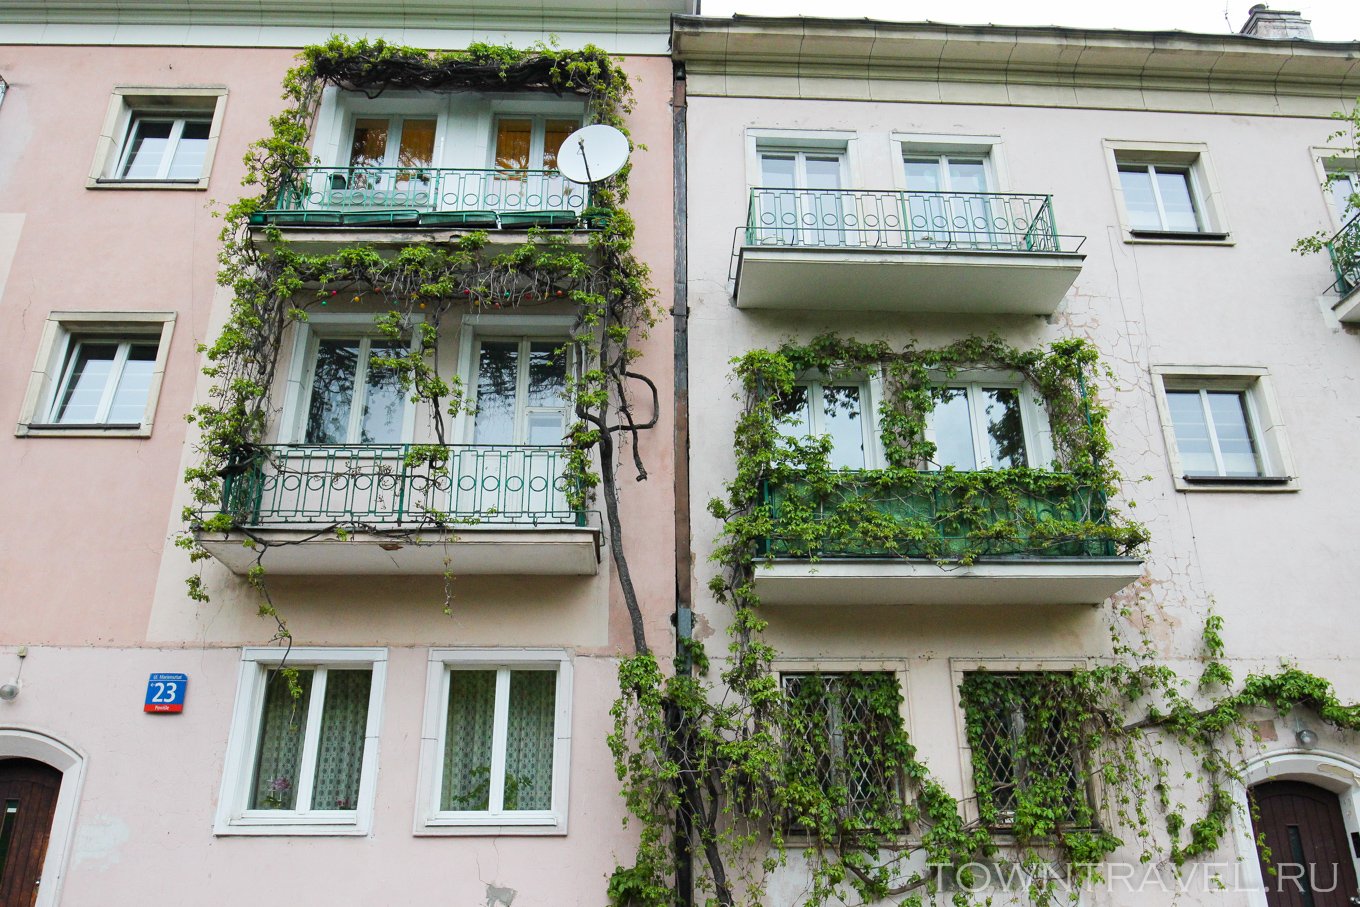 Плющ на балконе. Вьюны на балконе. Плющ балконный. Растения вьюны для балкона.